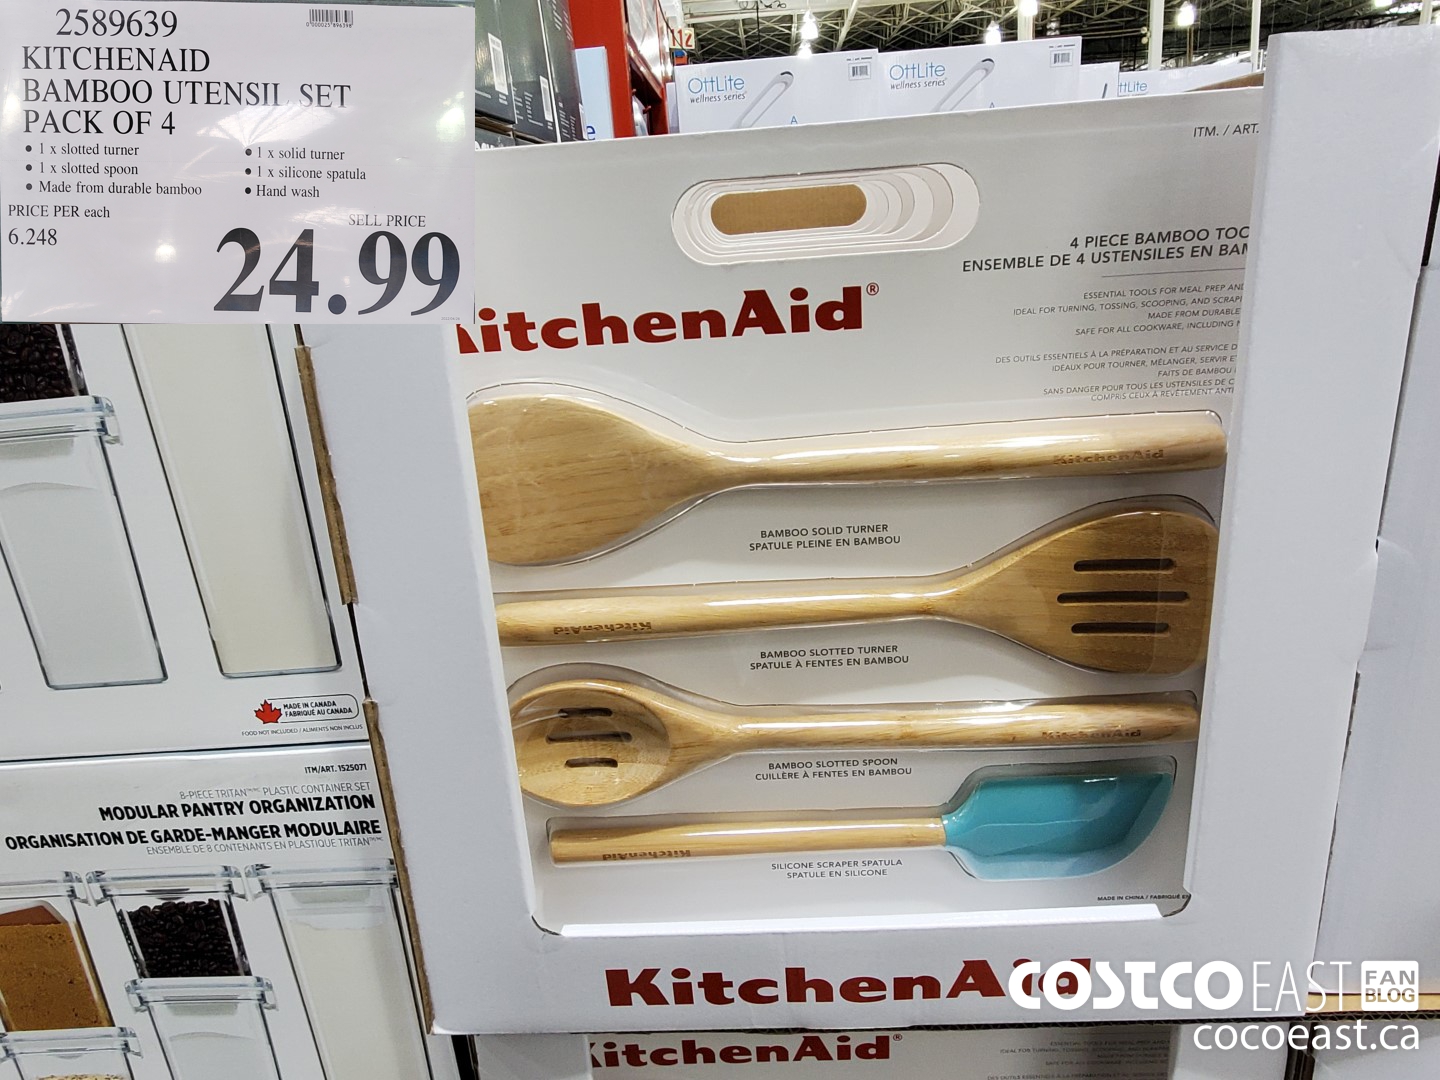 KitchenAid 4-Pack Tool Set at